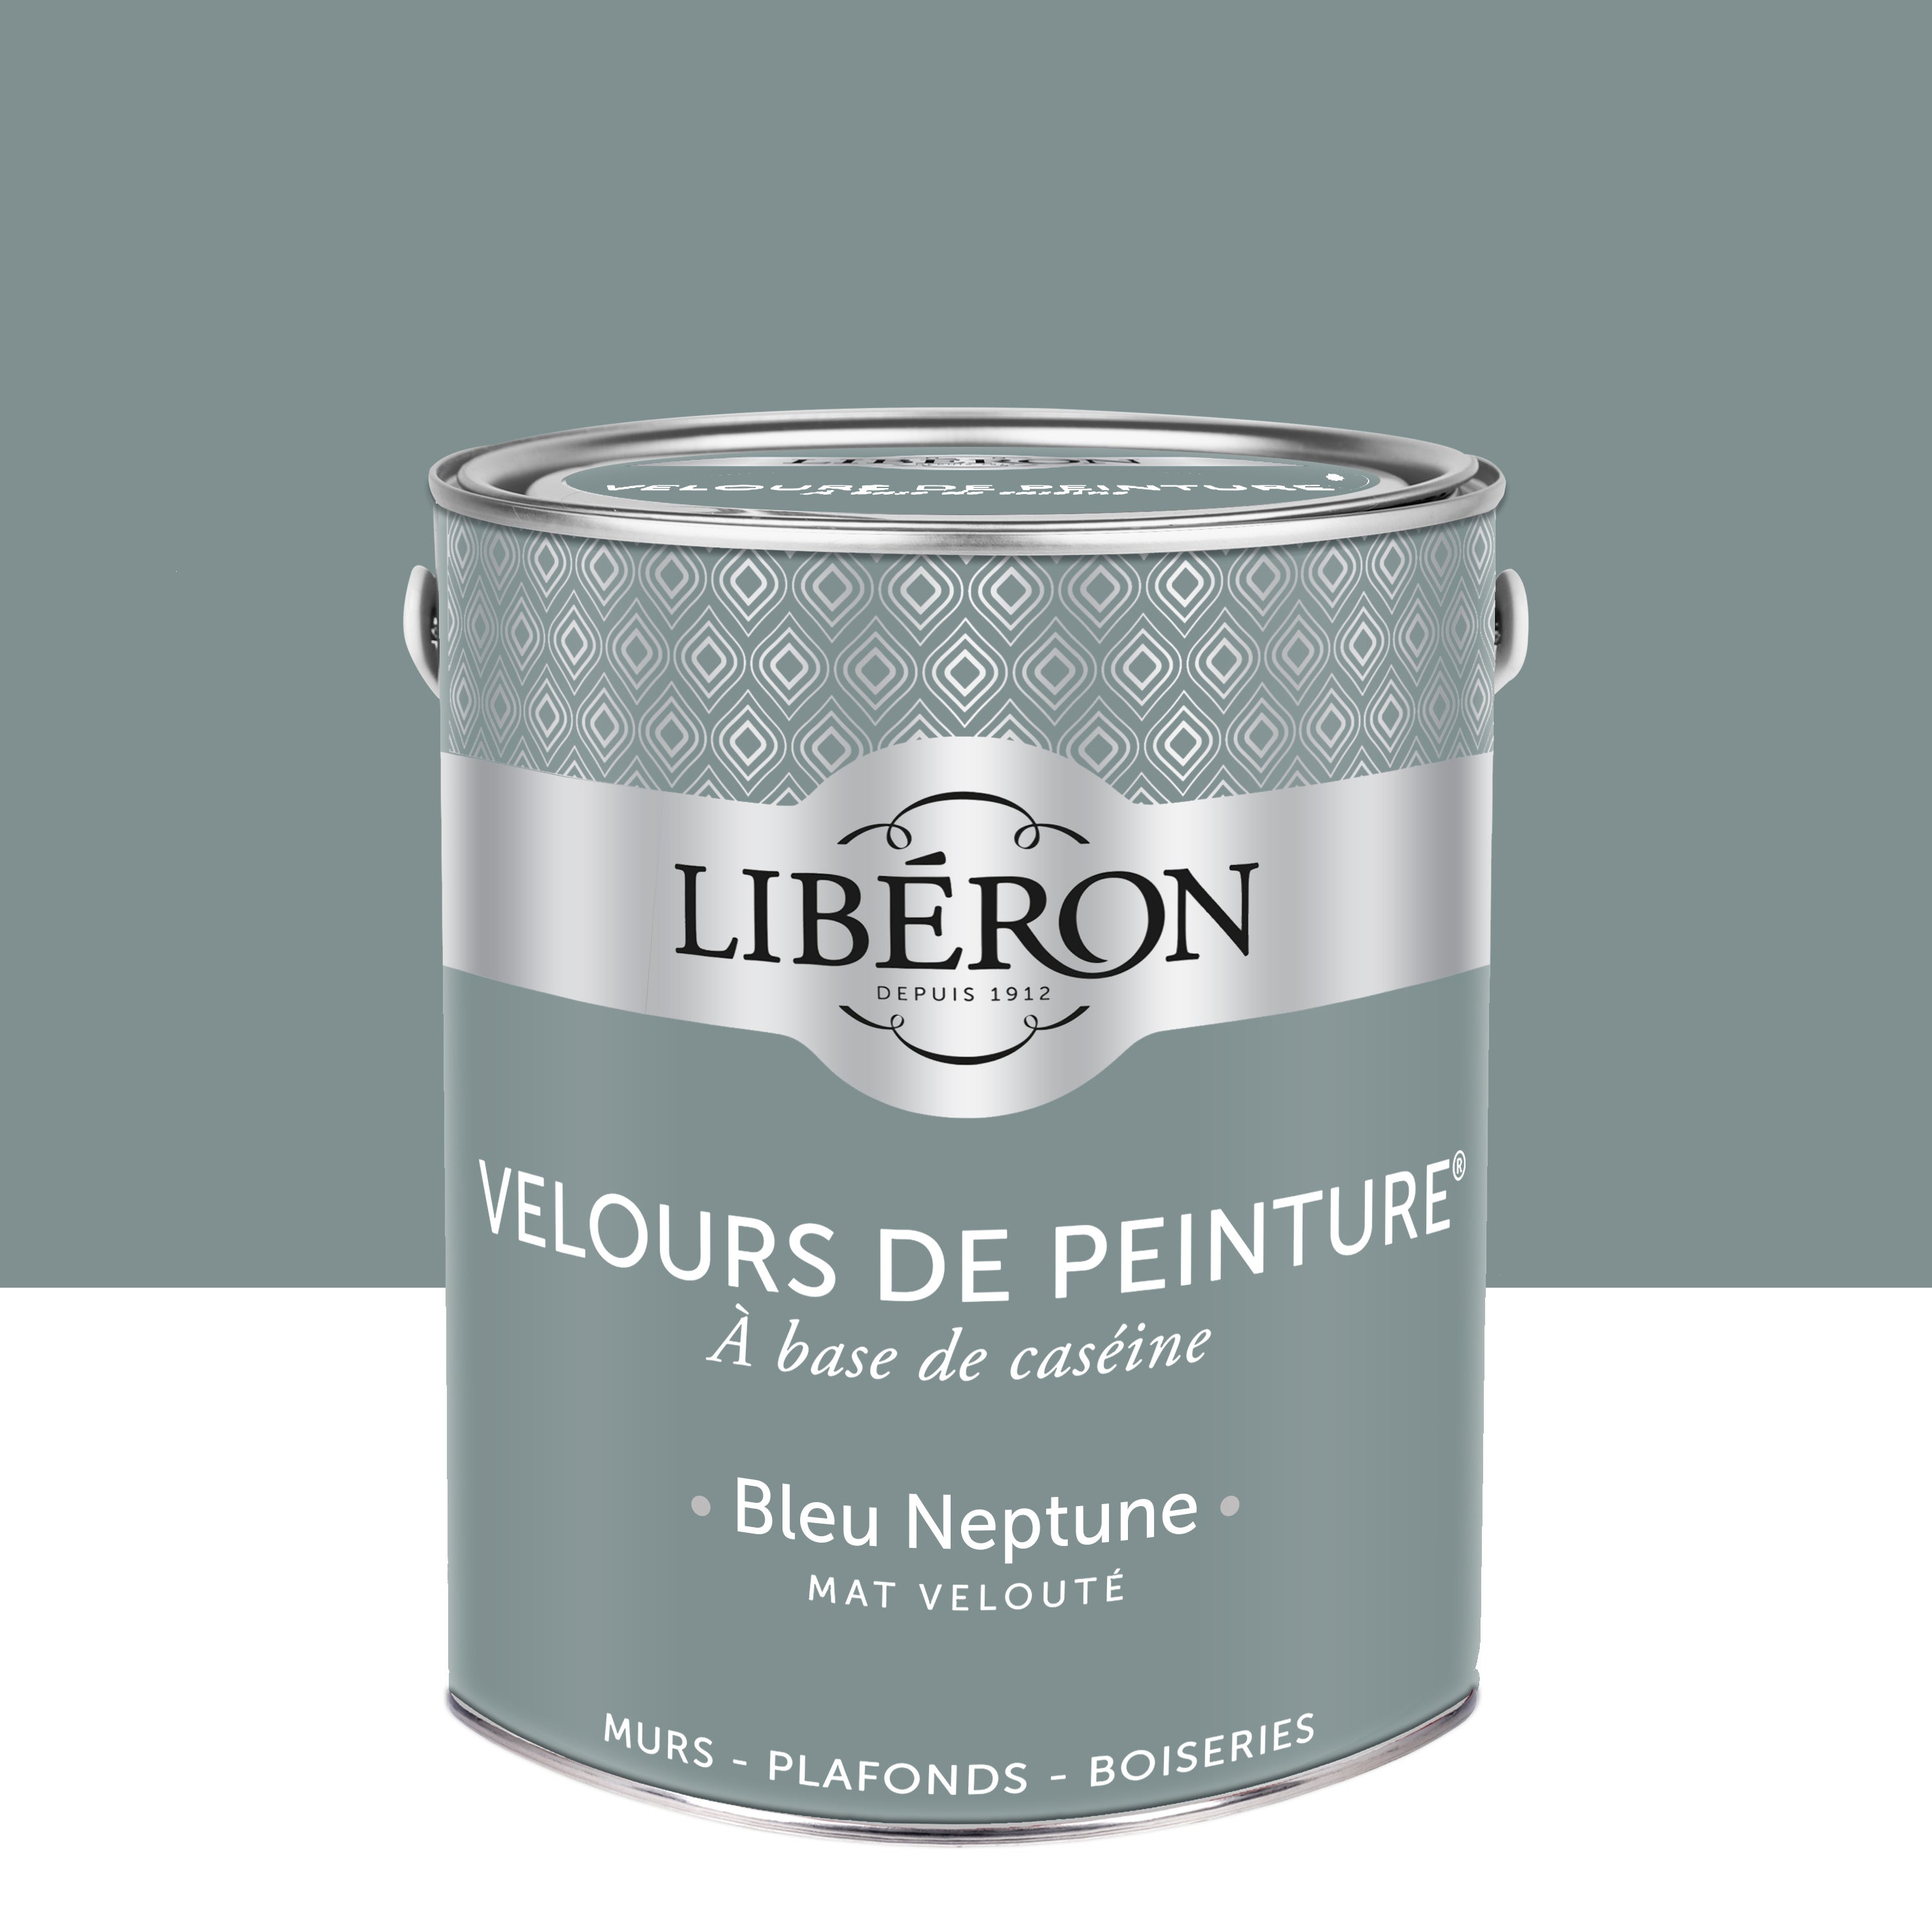 VELOURS DE PEINTURE ® - Couleur Bleu Neptune - Libéron